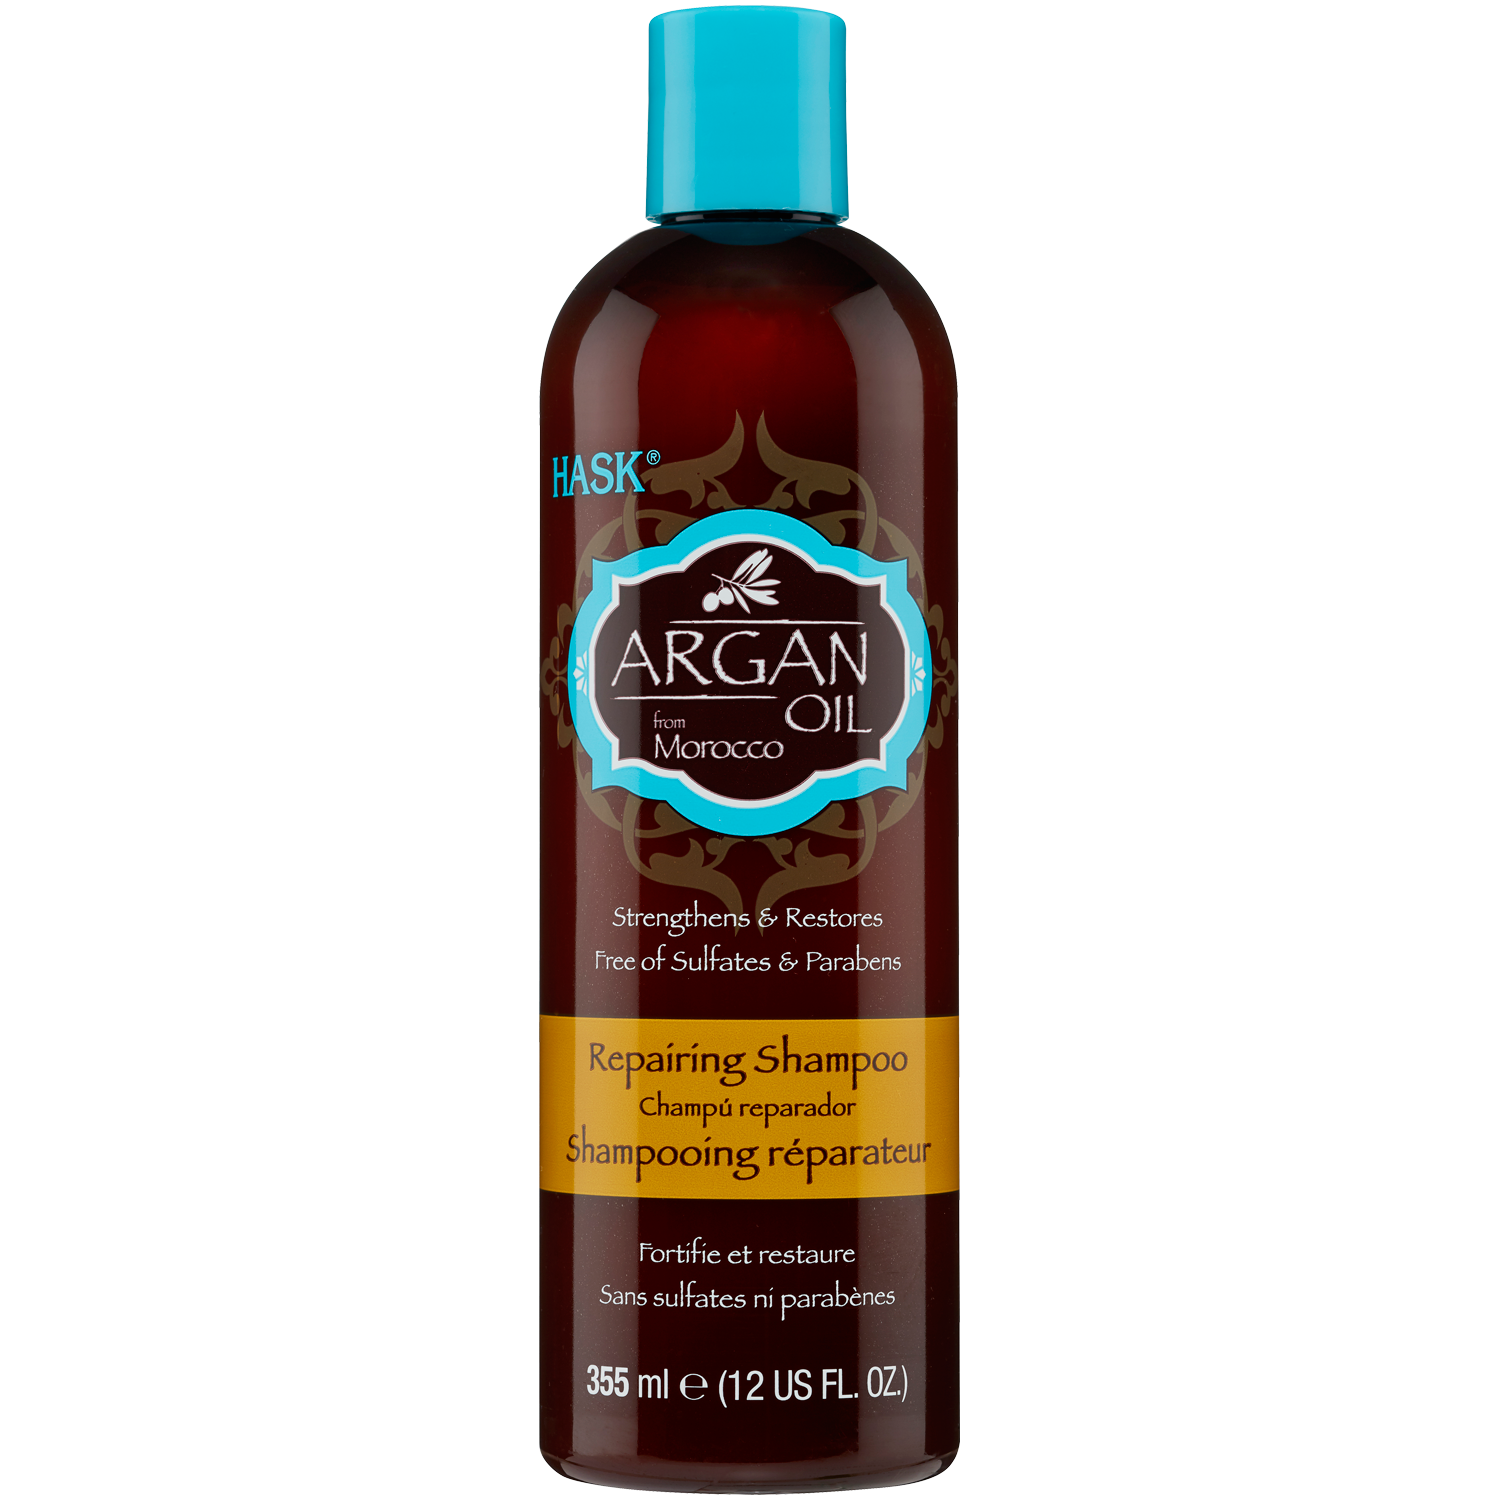 Hask szampon do włosów 335ml Argan Oil Marocco | hebe.pl